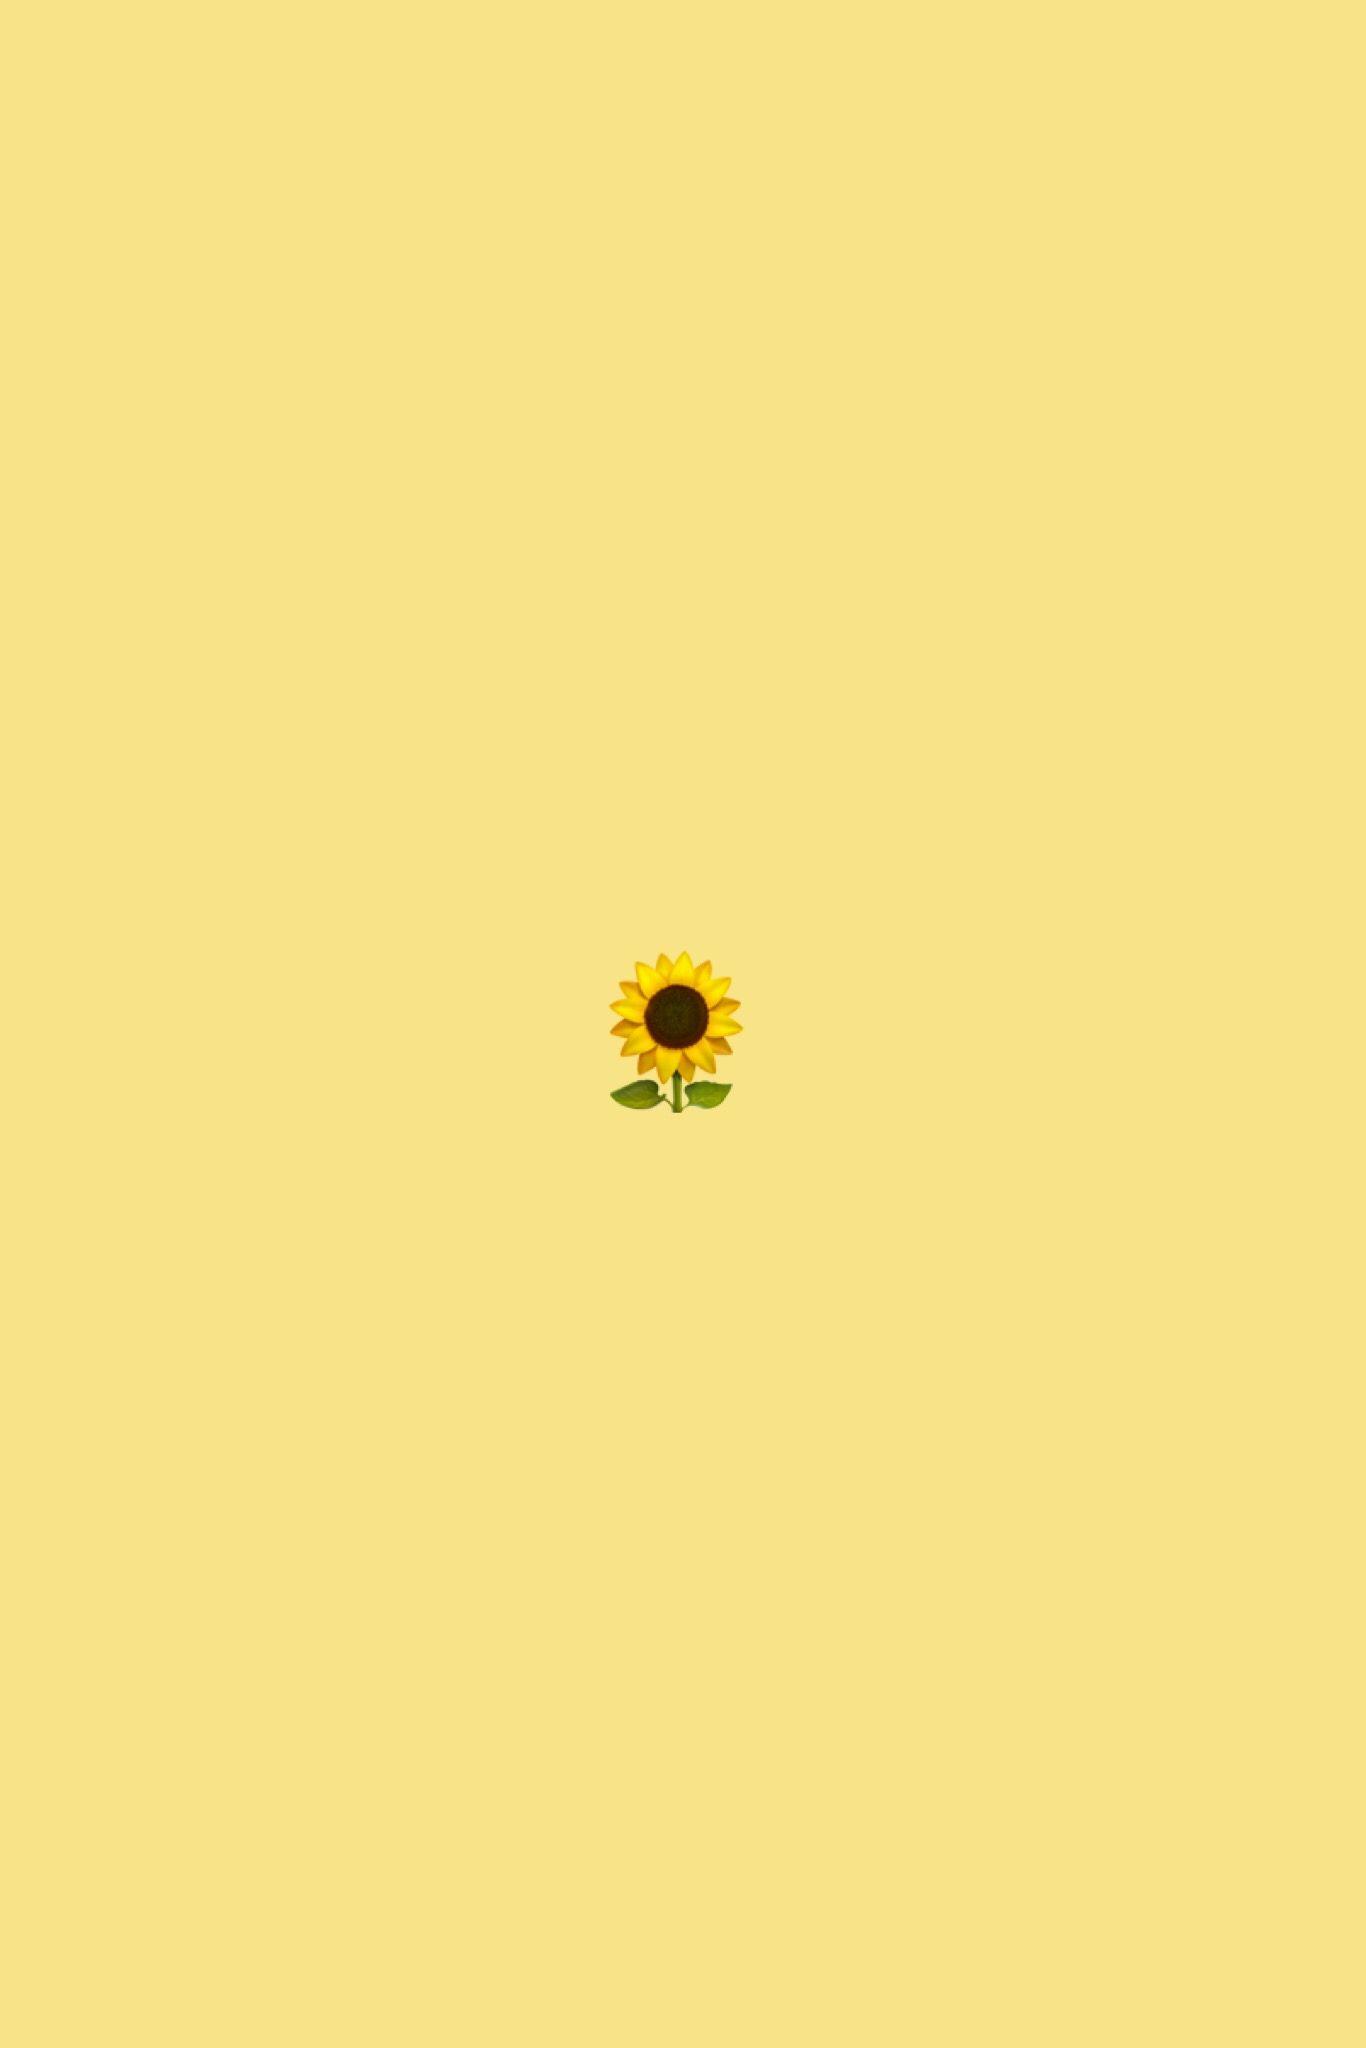 floralwallpaper #iphonewallpaper #flower #pretty. Emoji